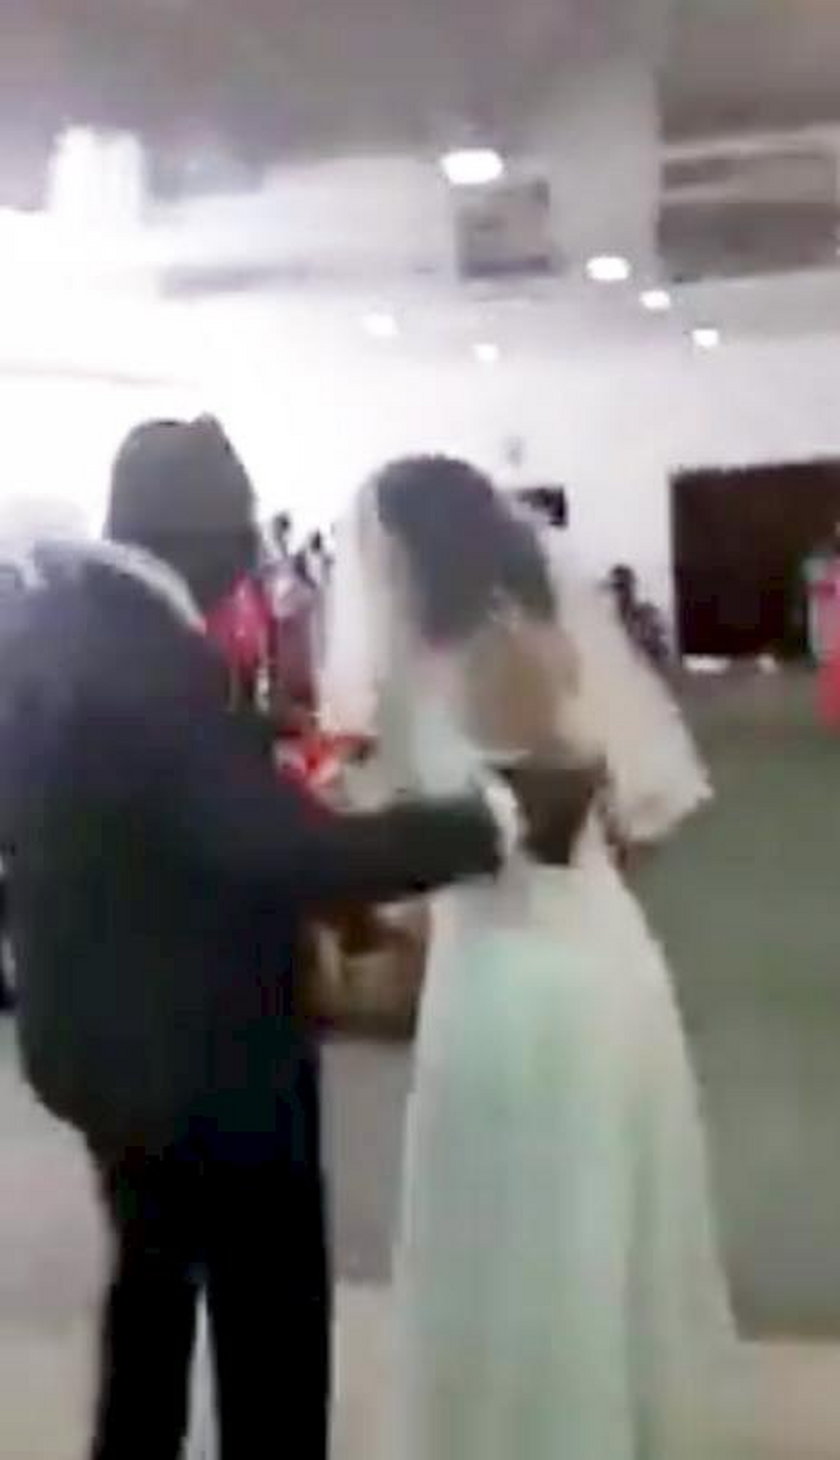 RPA: Skandal na ślubie. Do kościoła weszła kochanka pana młodego